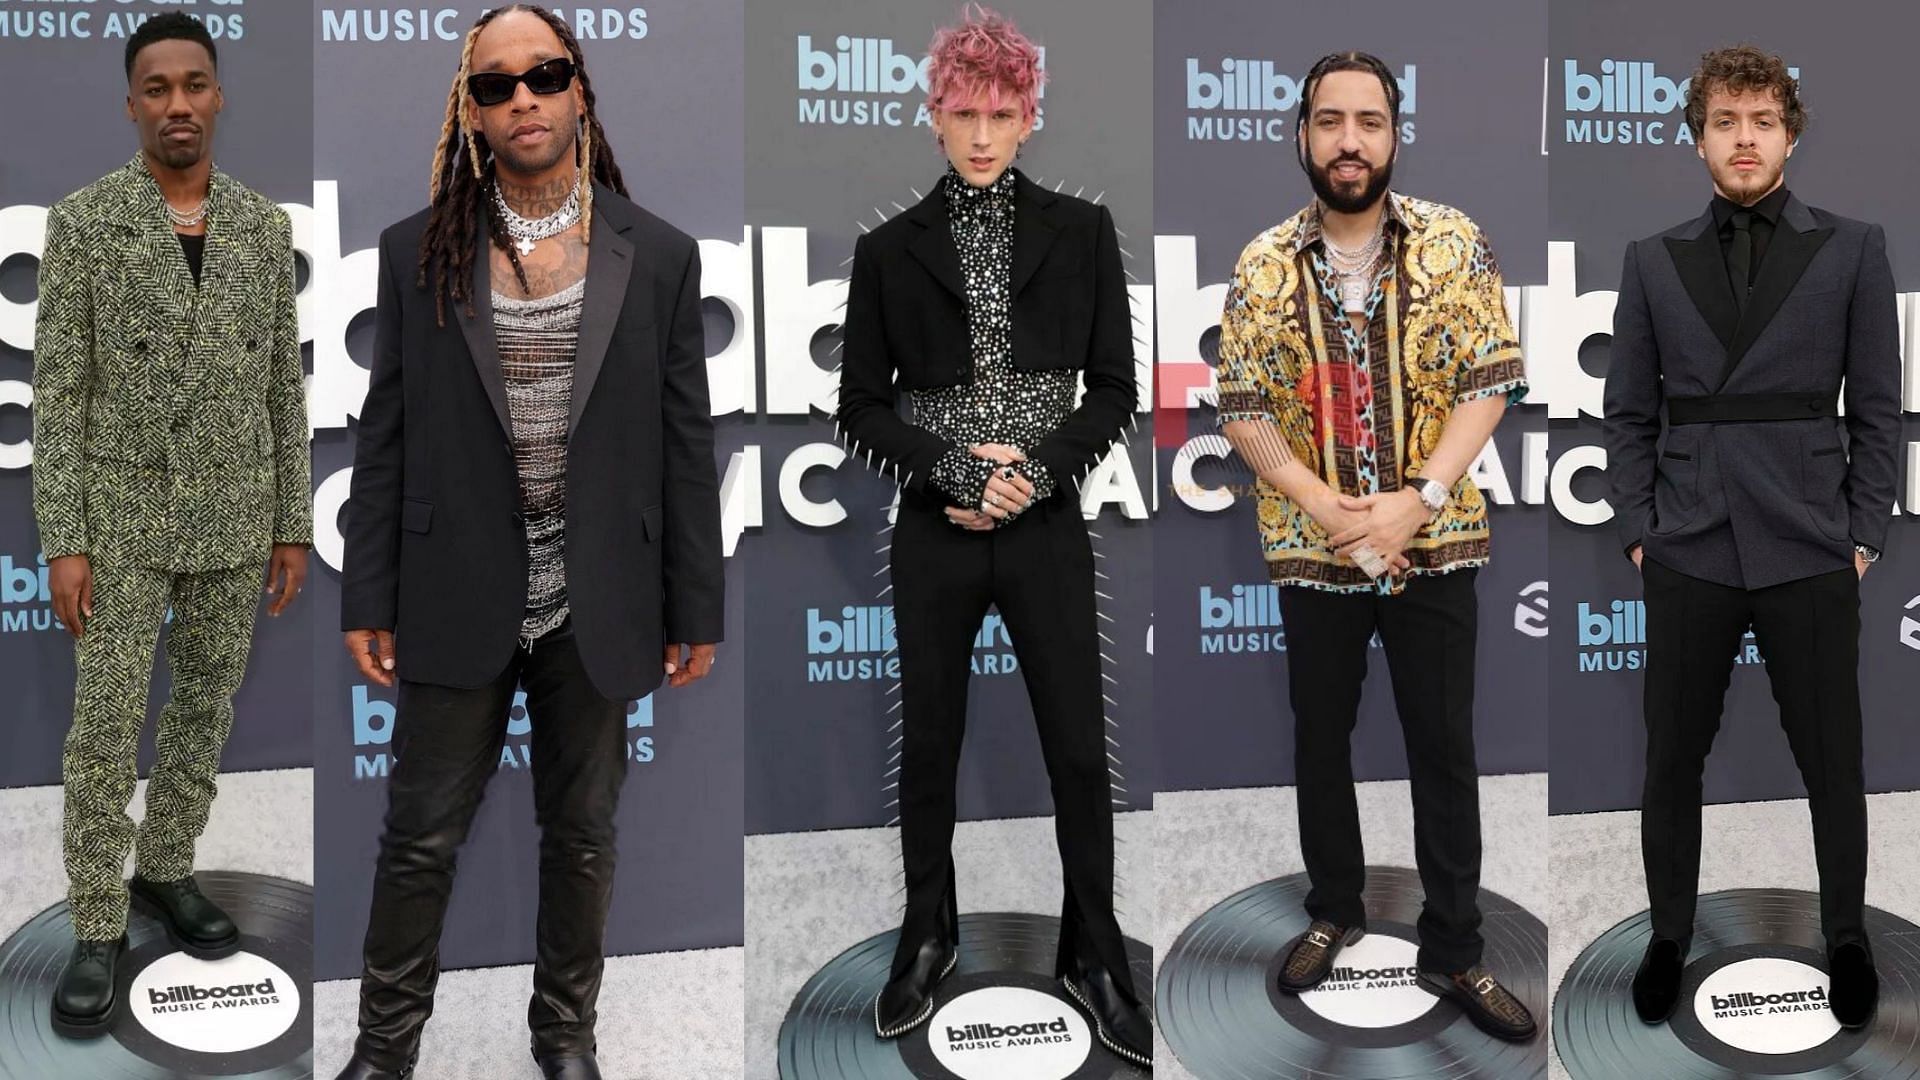 Billboard Music Awards 2022 red carpet: 5 best-dressed men (Image via Sportskeeda)